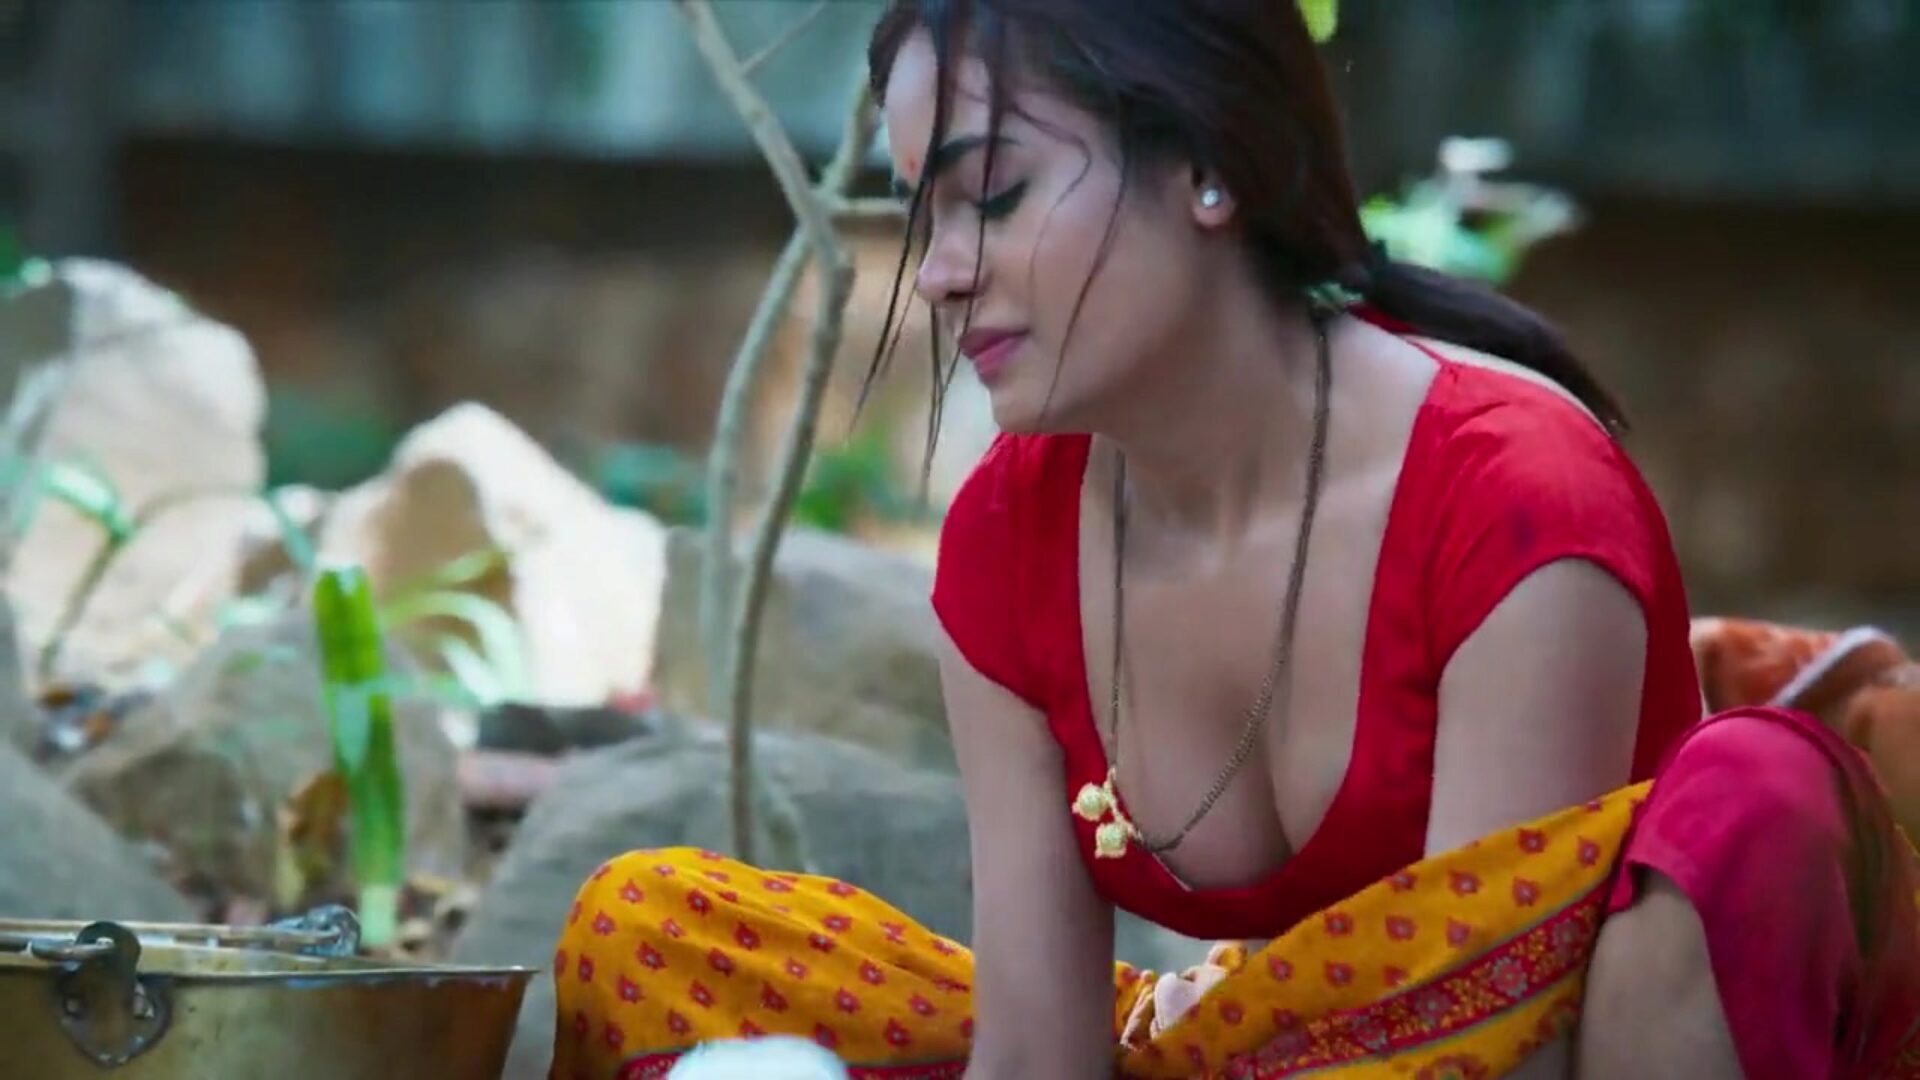 dhoban aur sarpanch disfruta del sexo apasionado satisfecho de la actriz india sikha sinha como sonu dhoban haciendo passioante har bang con sarpanch. sikha cornudo con su esposo golu dhobi. sikha sinha follada en varias posiciones de orgía sonu dhoban ka joban mastram